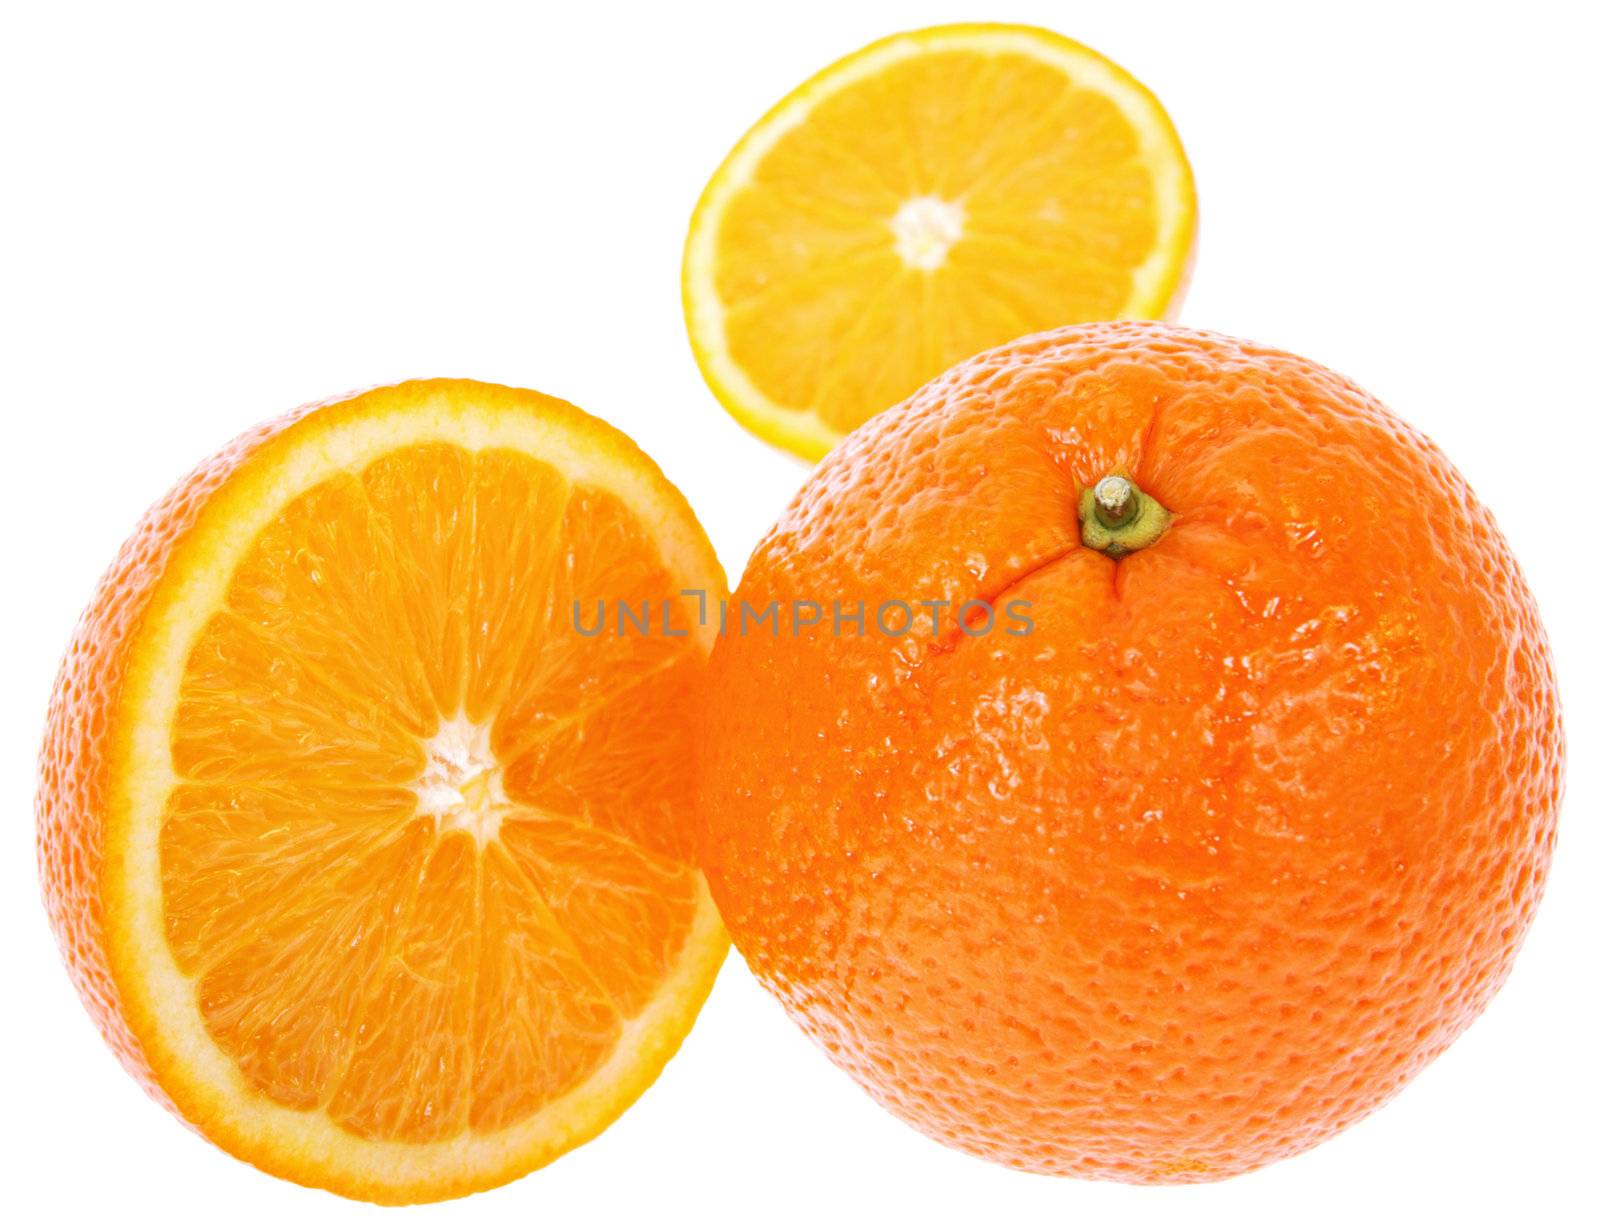 Fresh juicy oranges by vilevi